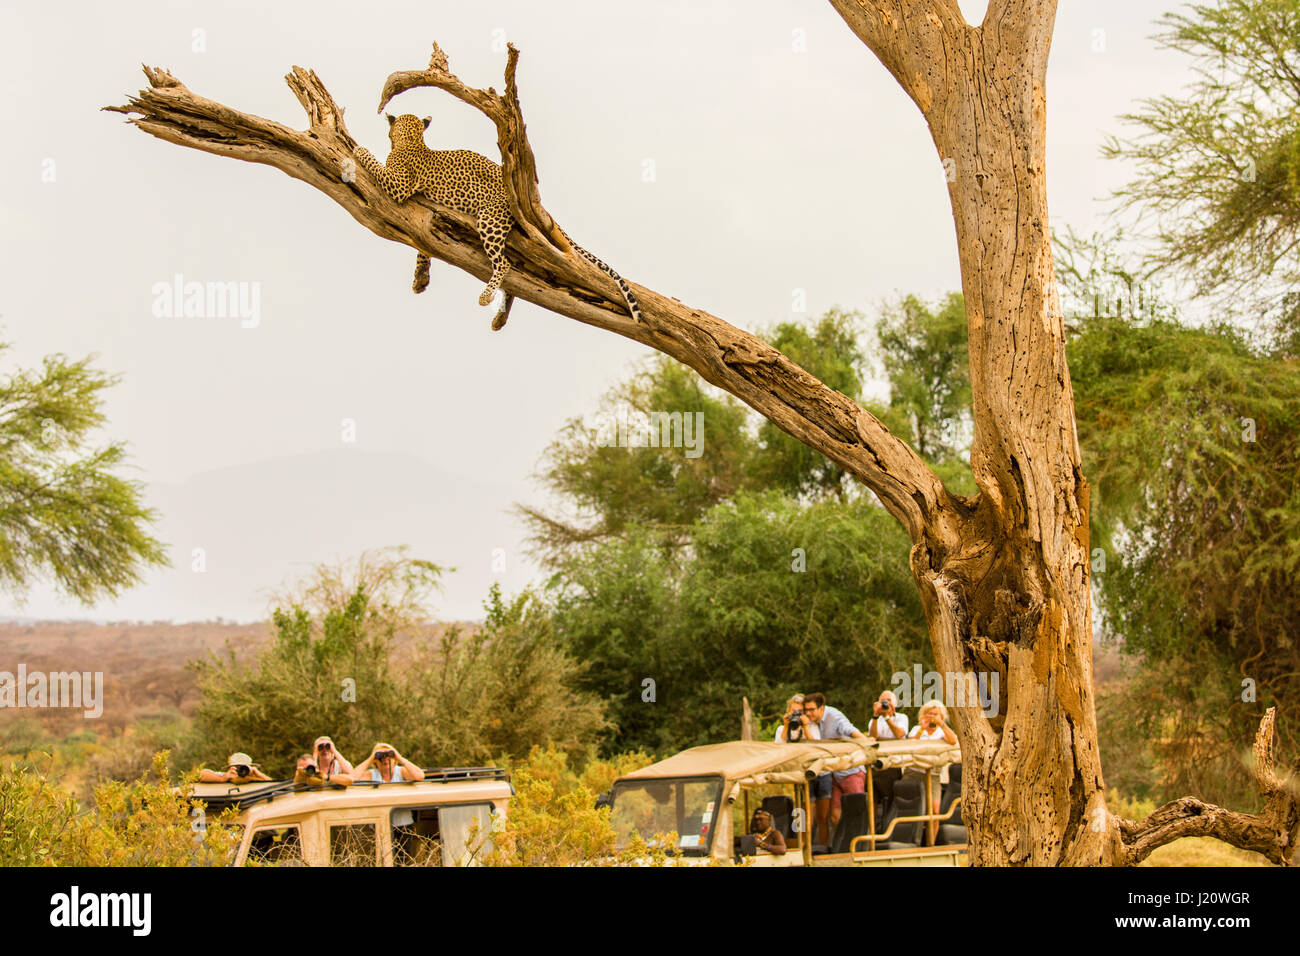 Les touristes dans les véhicules de safari africain en regardant un léopard, Panthera pardus, dans un arbre dans le Buffalo Springs les réserves de gibier, Kenya, Afrique de l'Est Banque D'Images